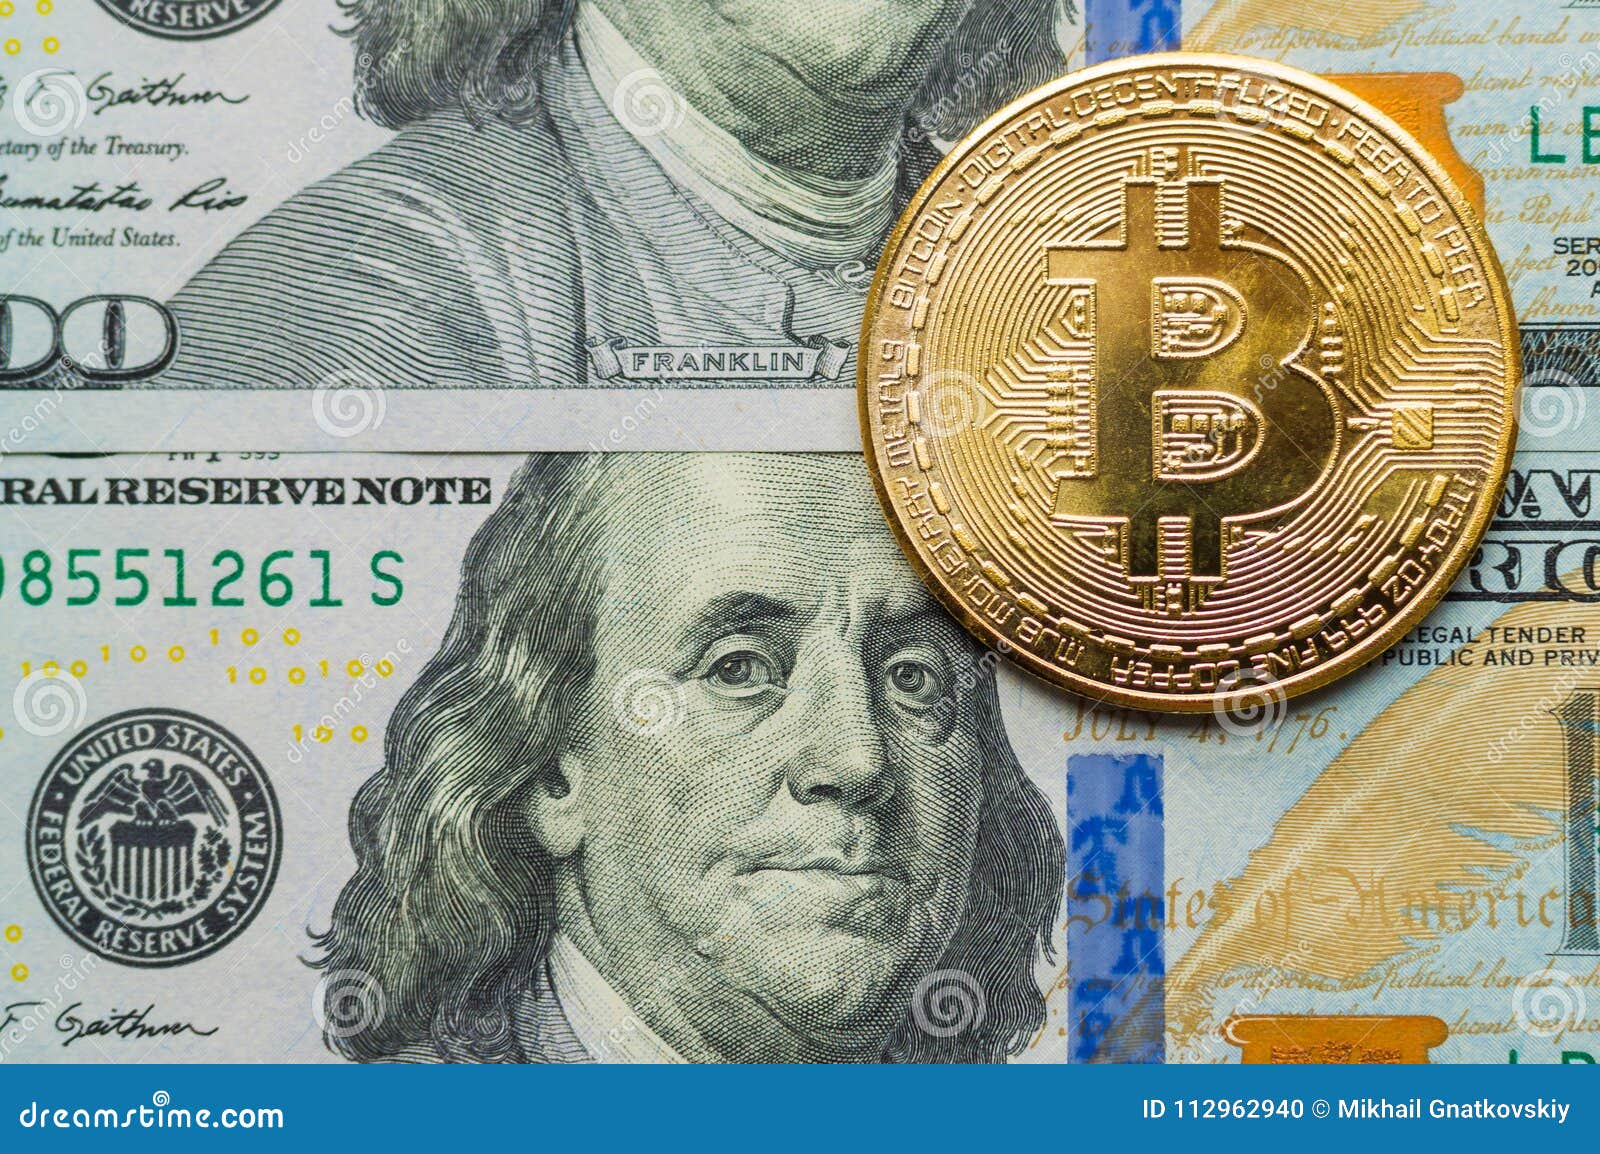 0.000117 bitcoin in dollars